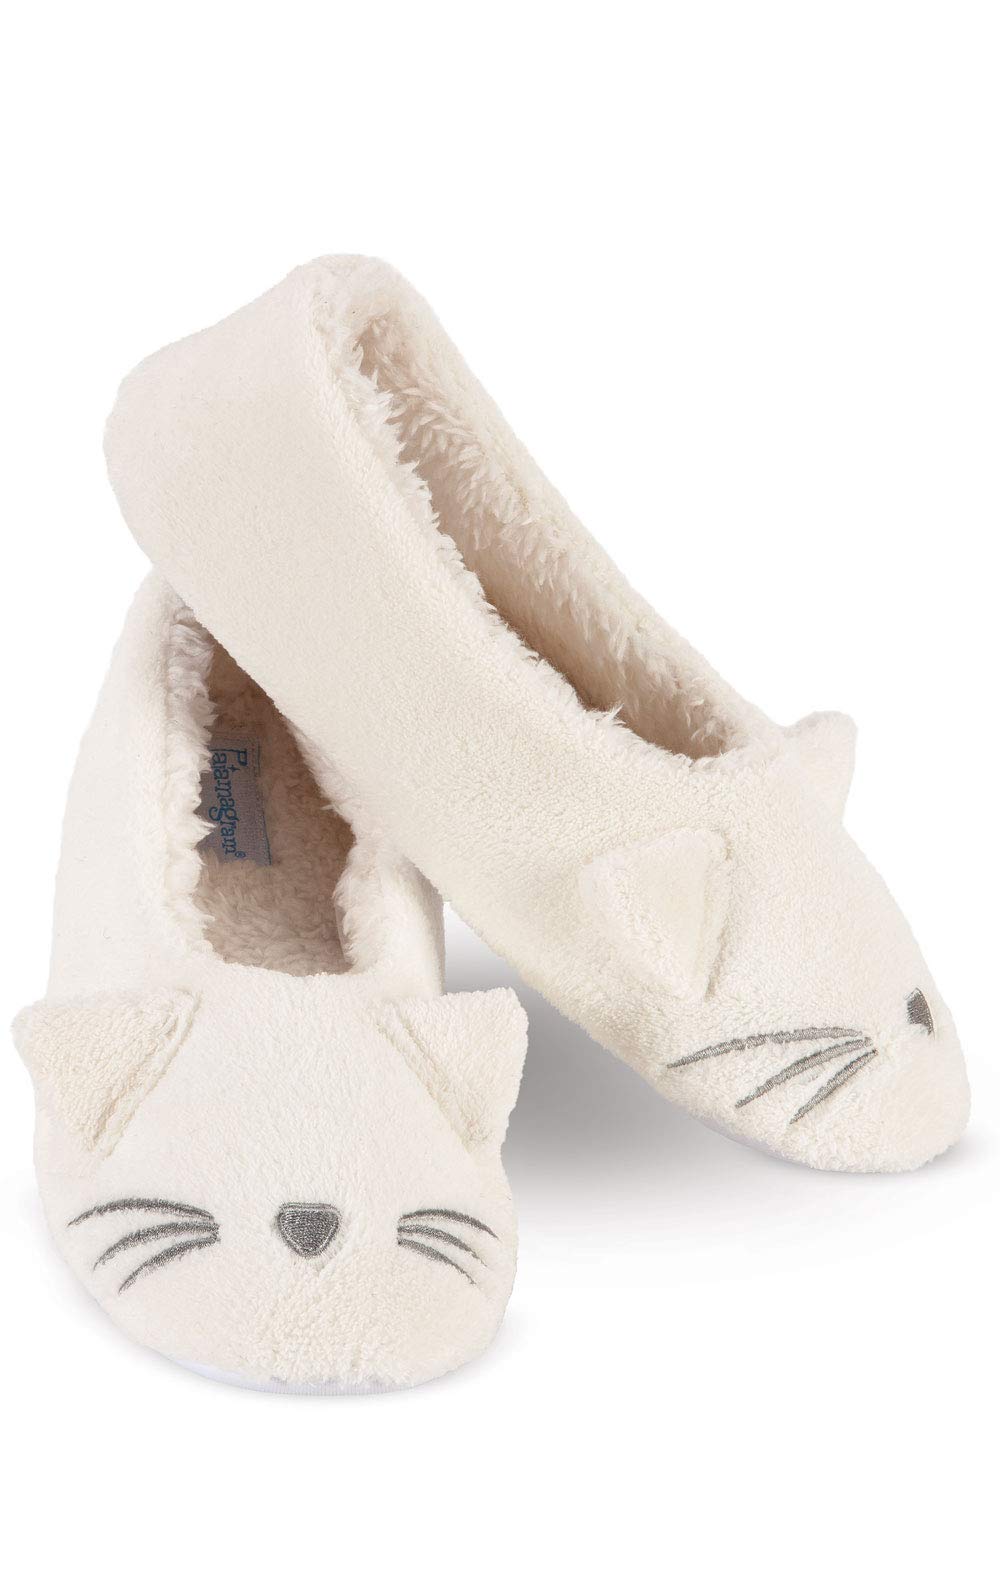 PajamaGram Cat Slippers For Women - Women's Slippers